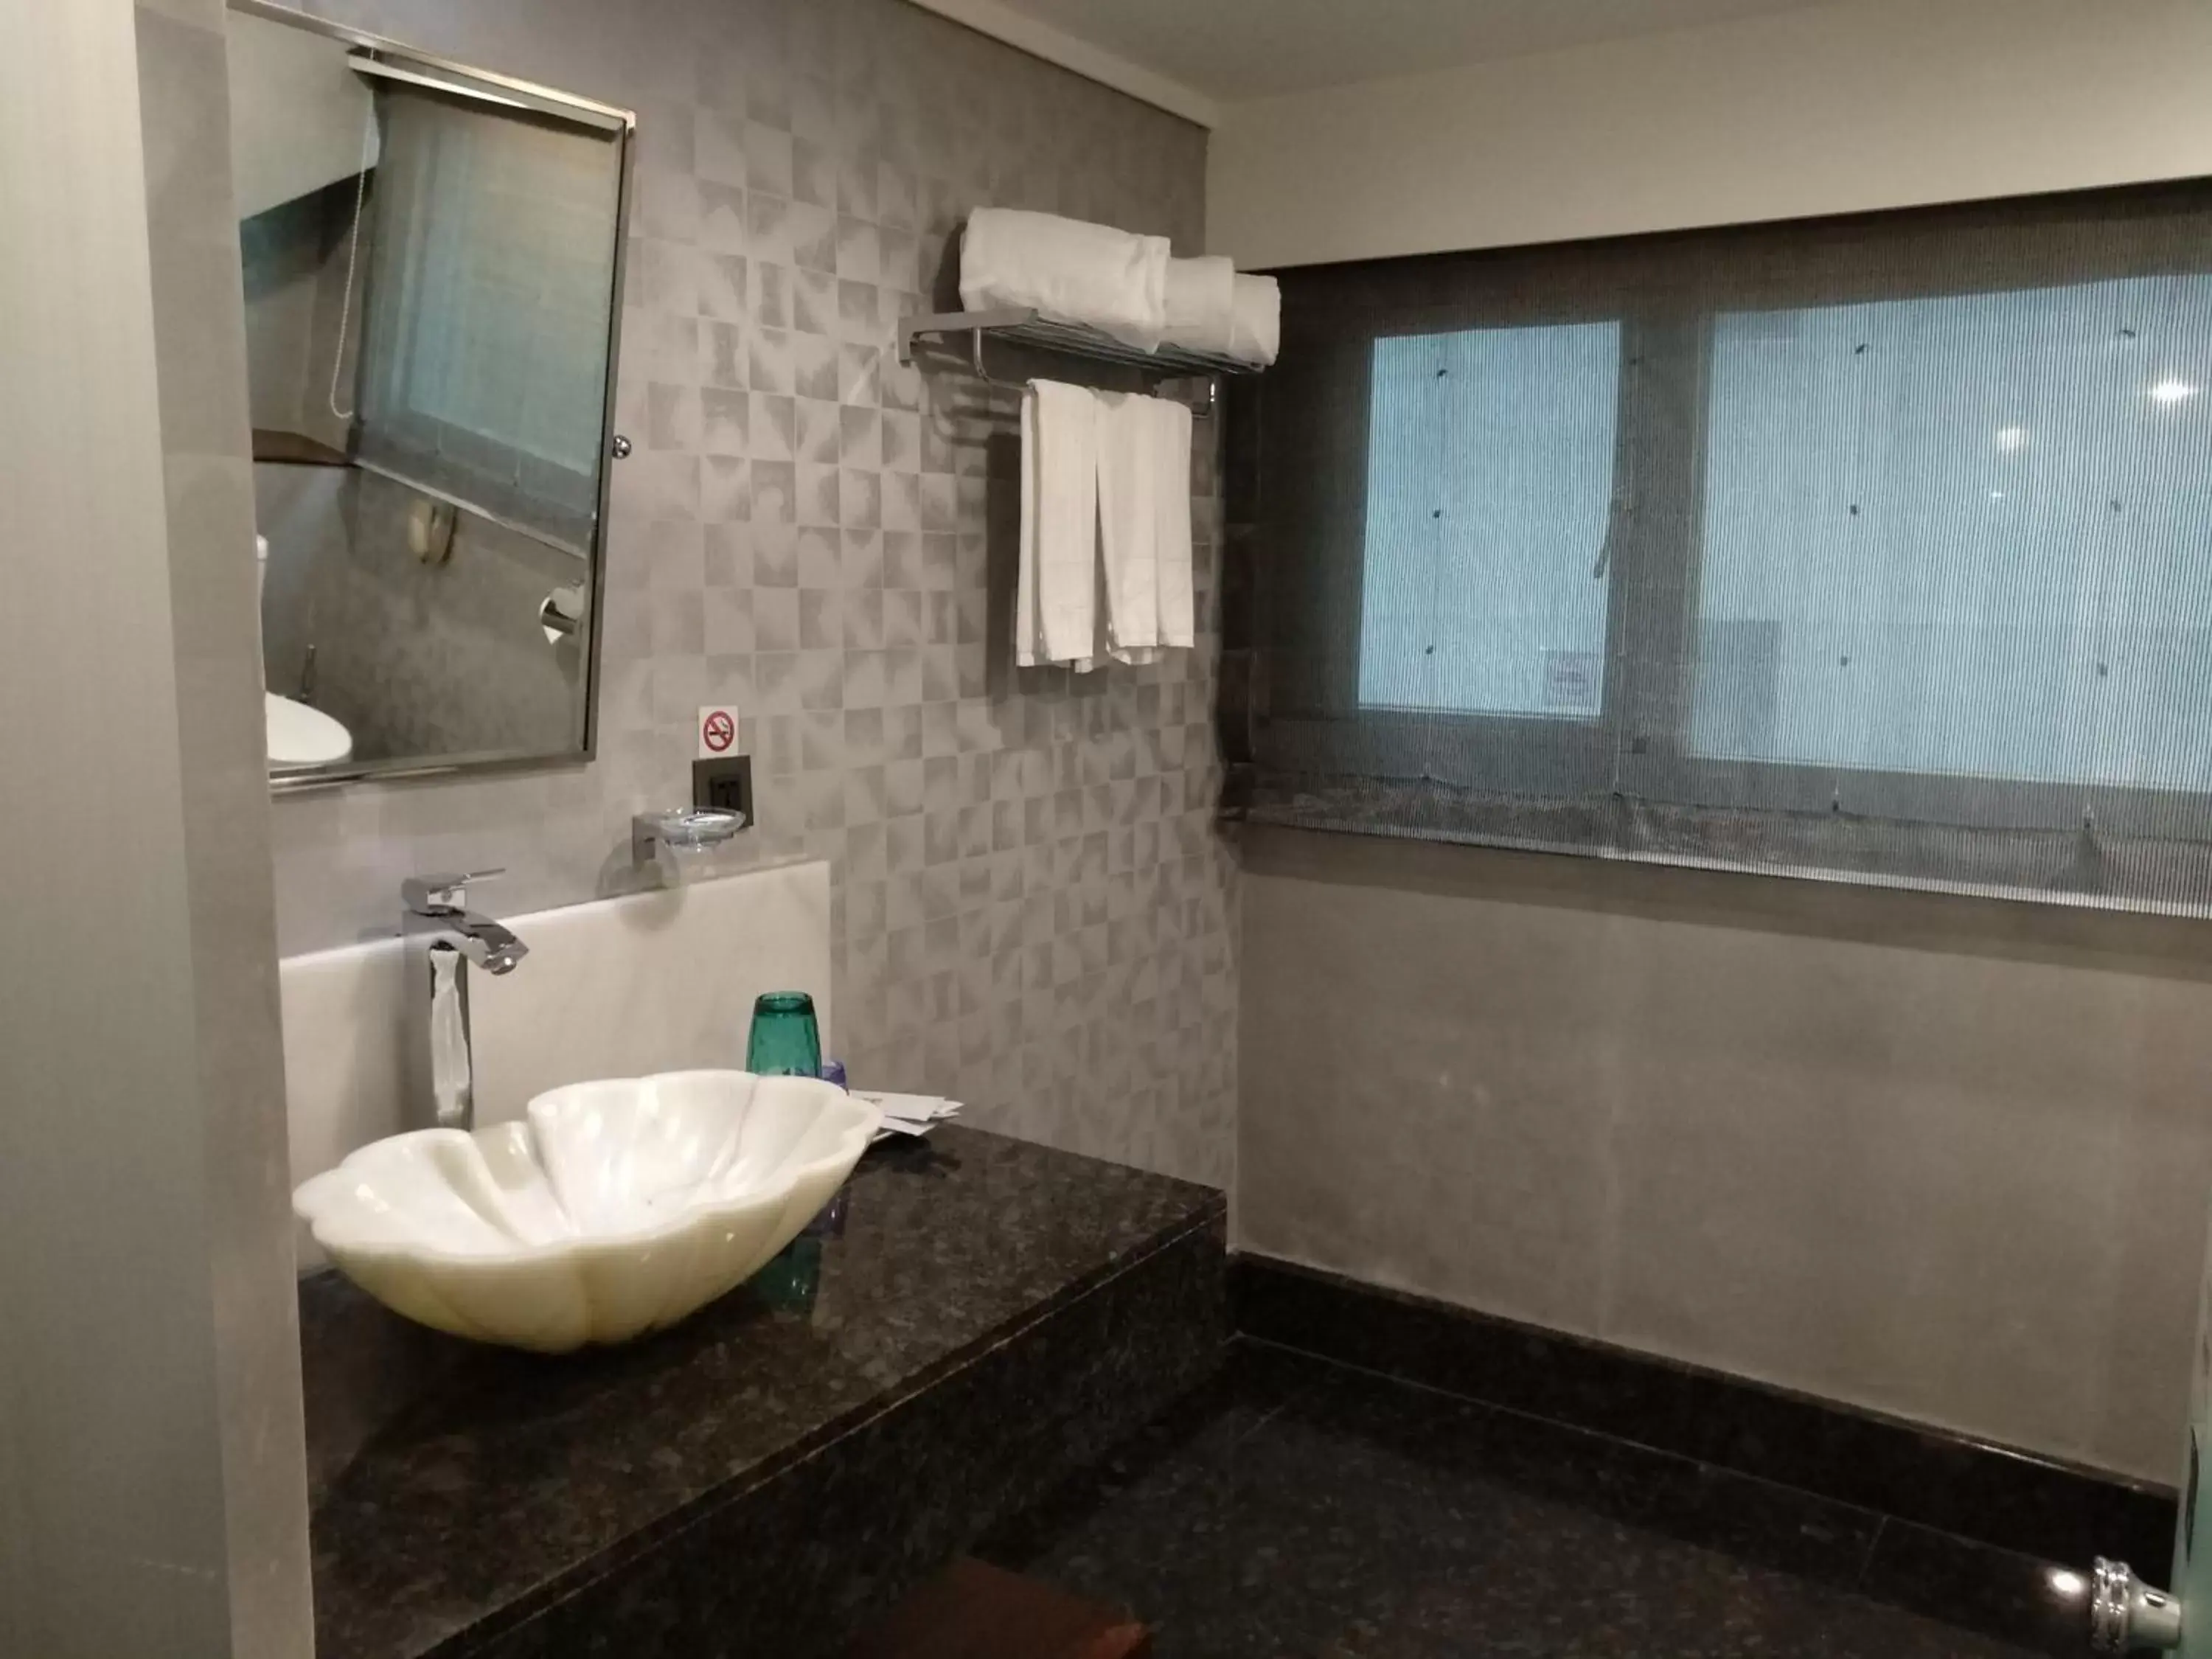 Bathroom in Ximen Airline Hotel